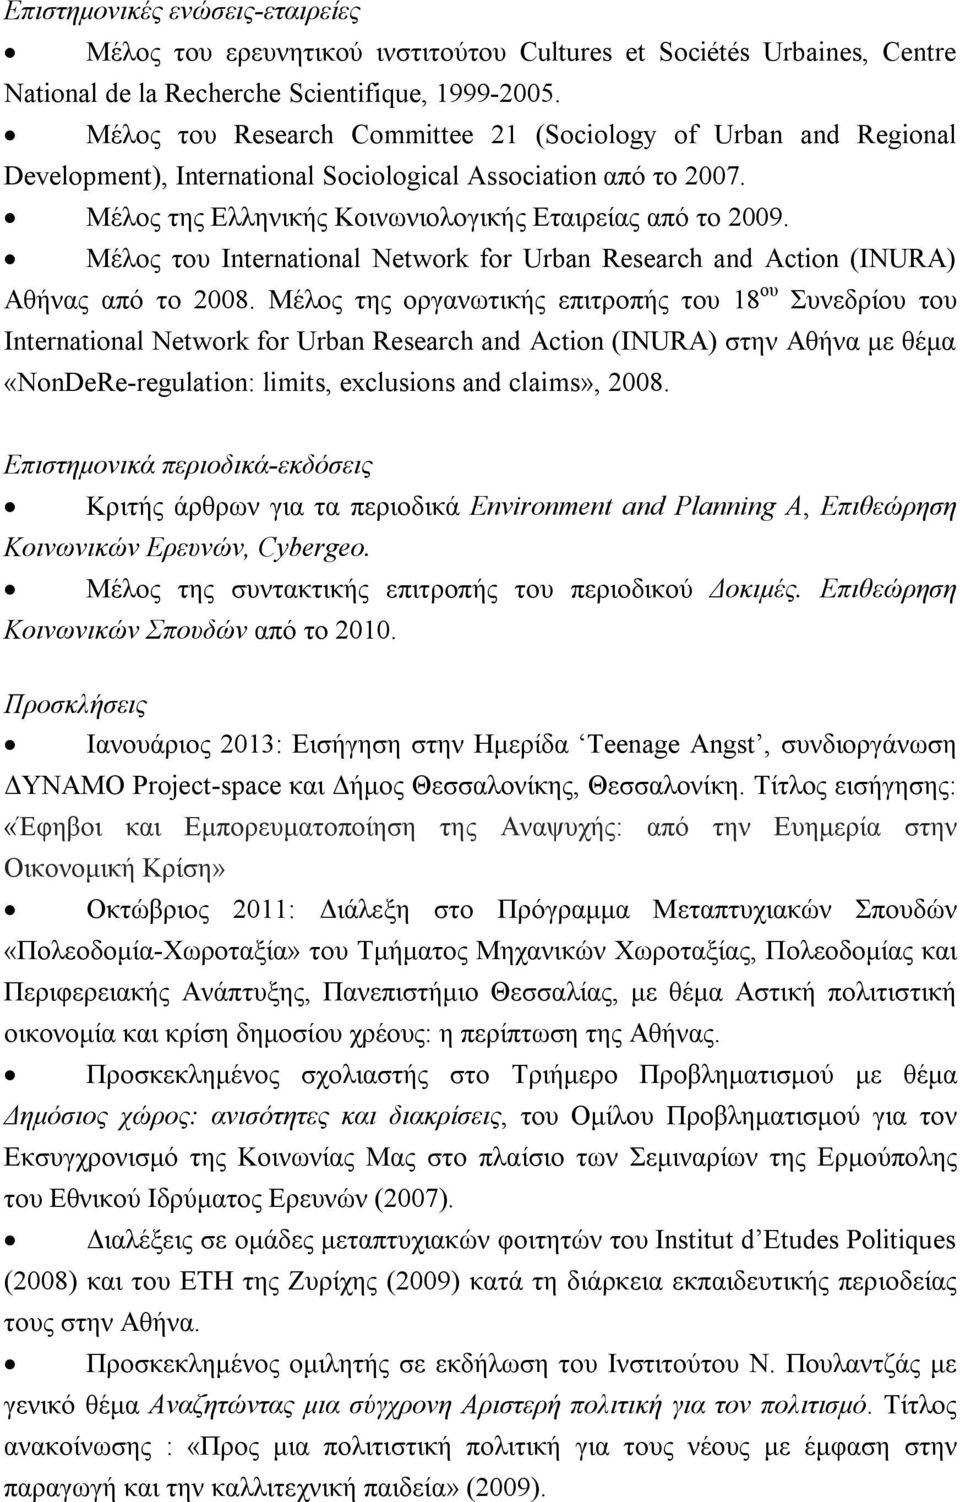 Μέλος του International Network for Urban Research and Action (INURA) Αθήνας από το 2008.